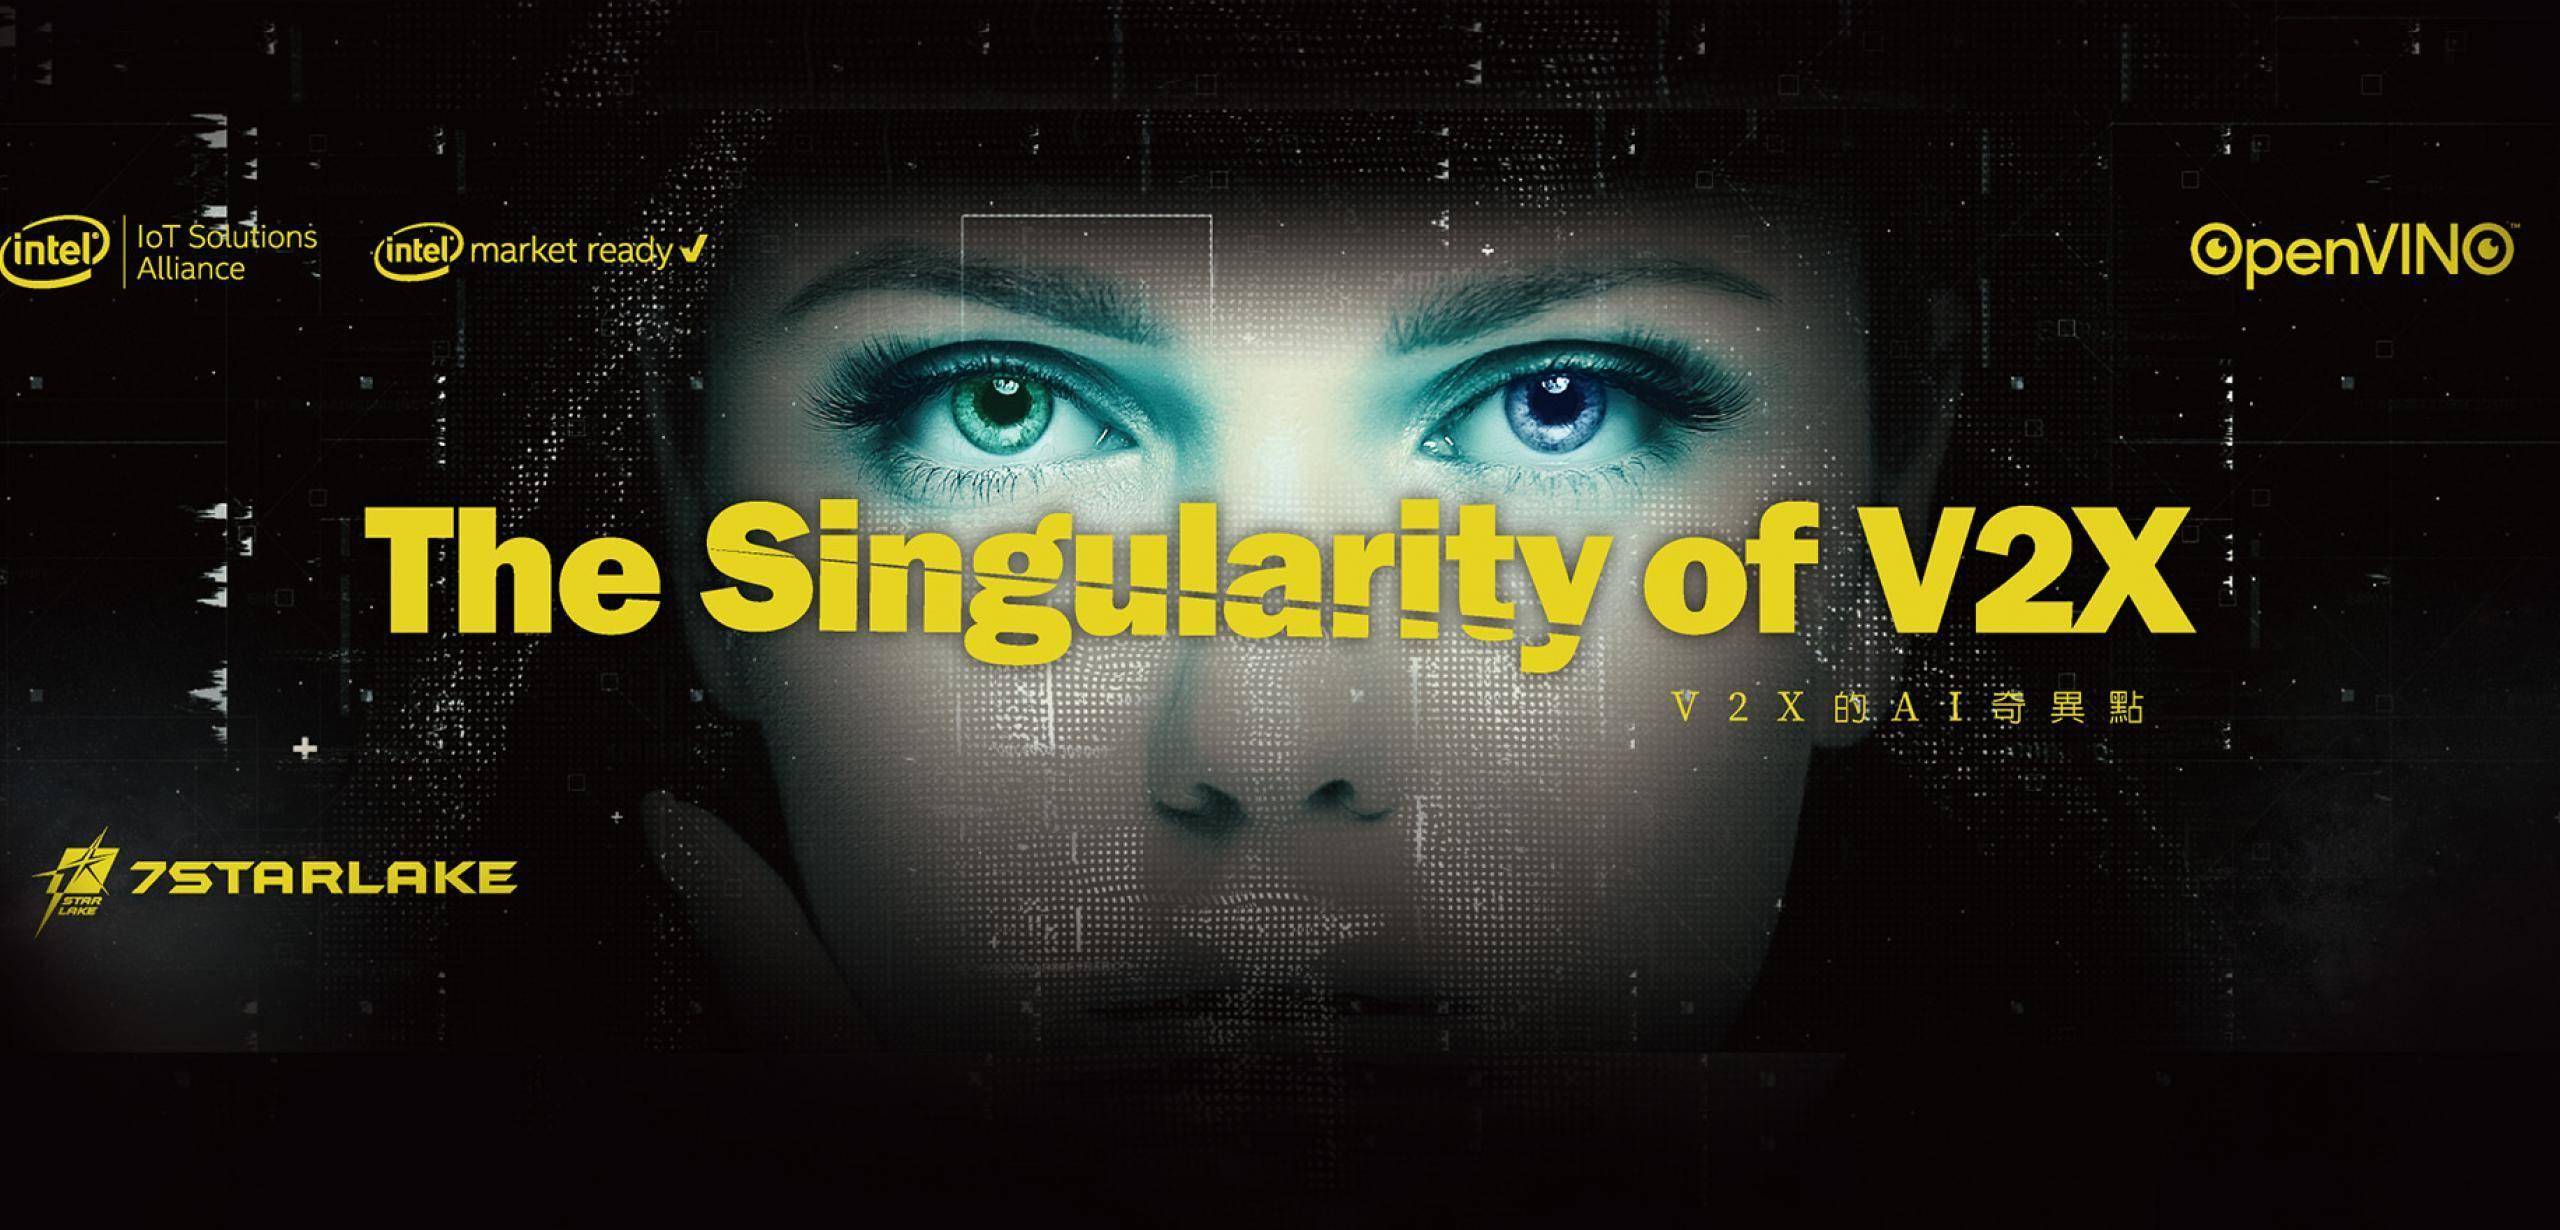 The Singularity of V2X